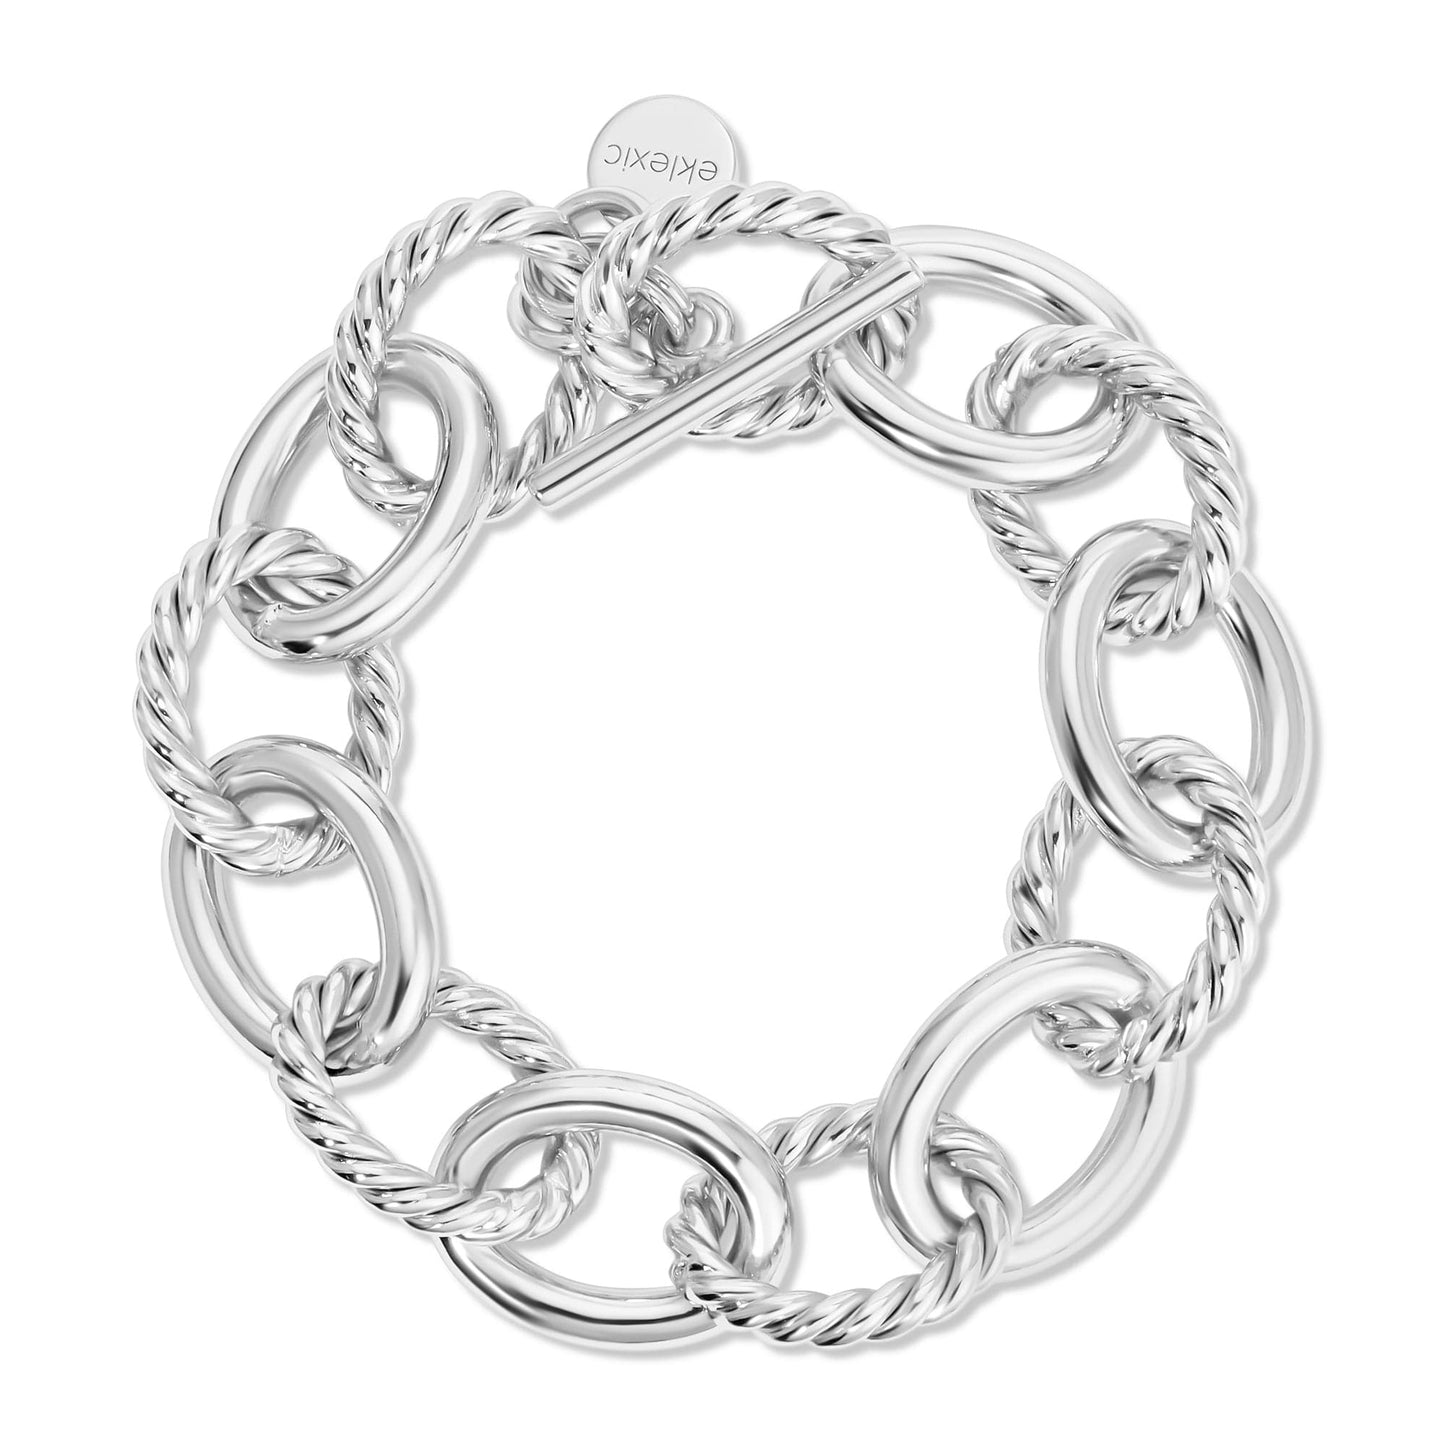 Xl Alternating Twisted Link Toggle Bracelet